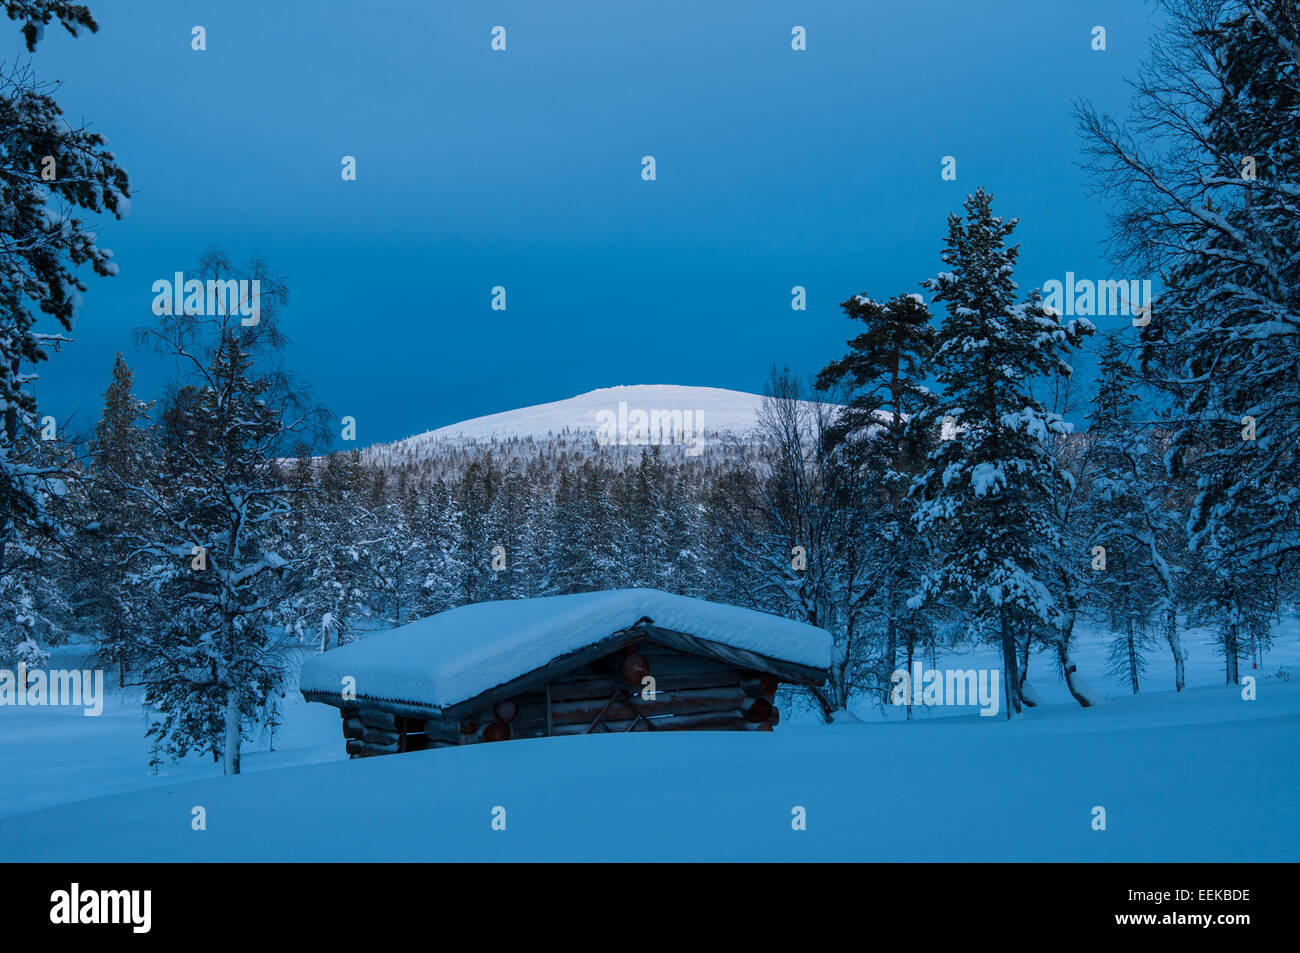 Ce paysage de neige shot a été prise au cours de la période de nuit polaire dans le parc national Urho Kekkonen, Finlande. Banque D'Images